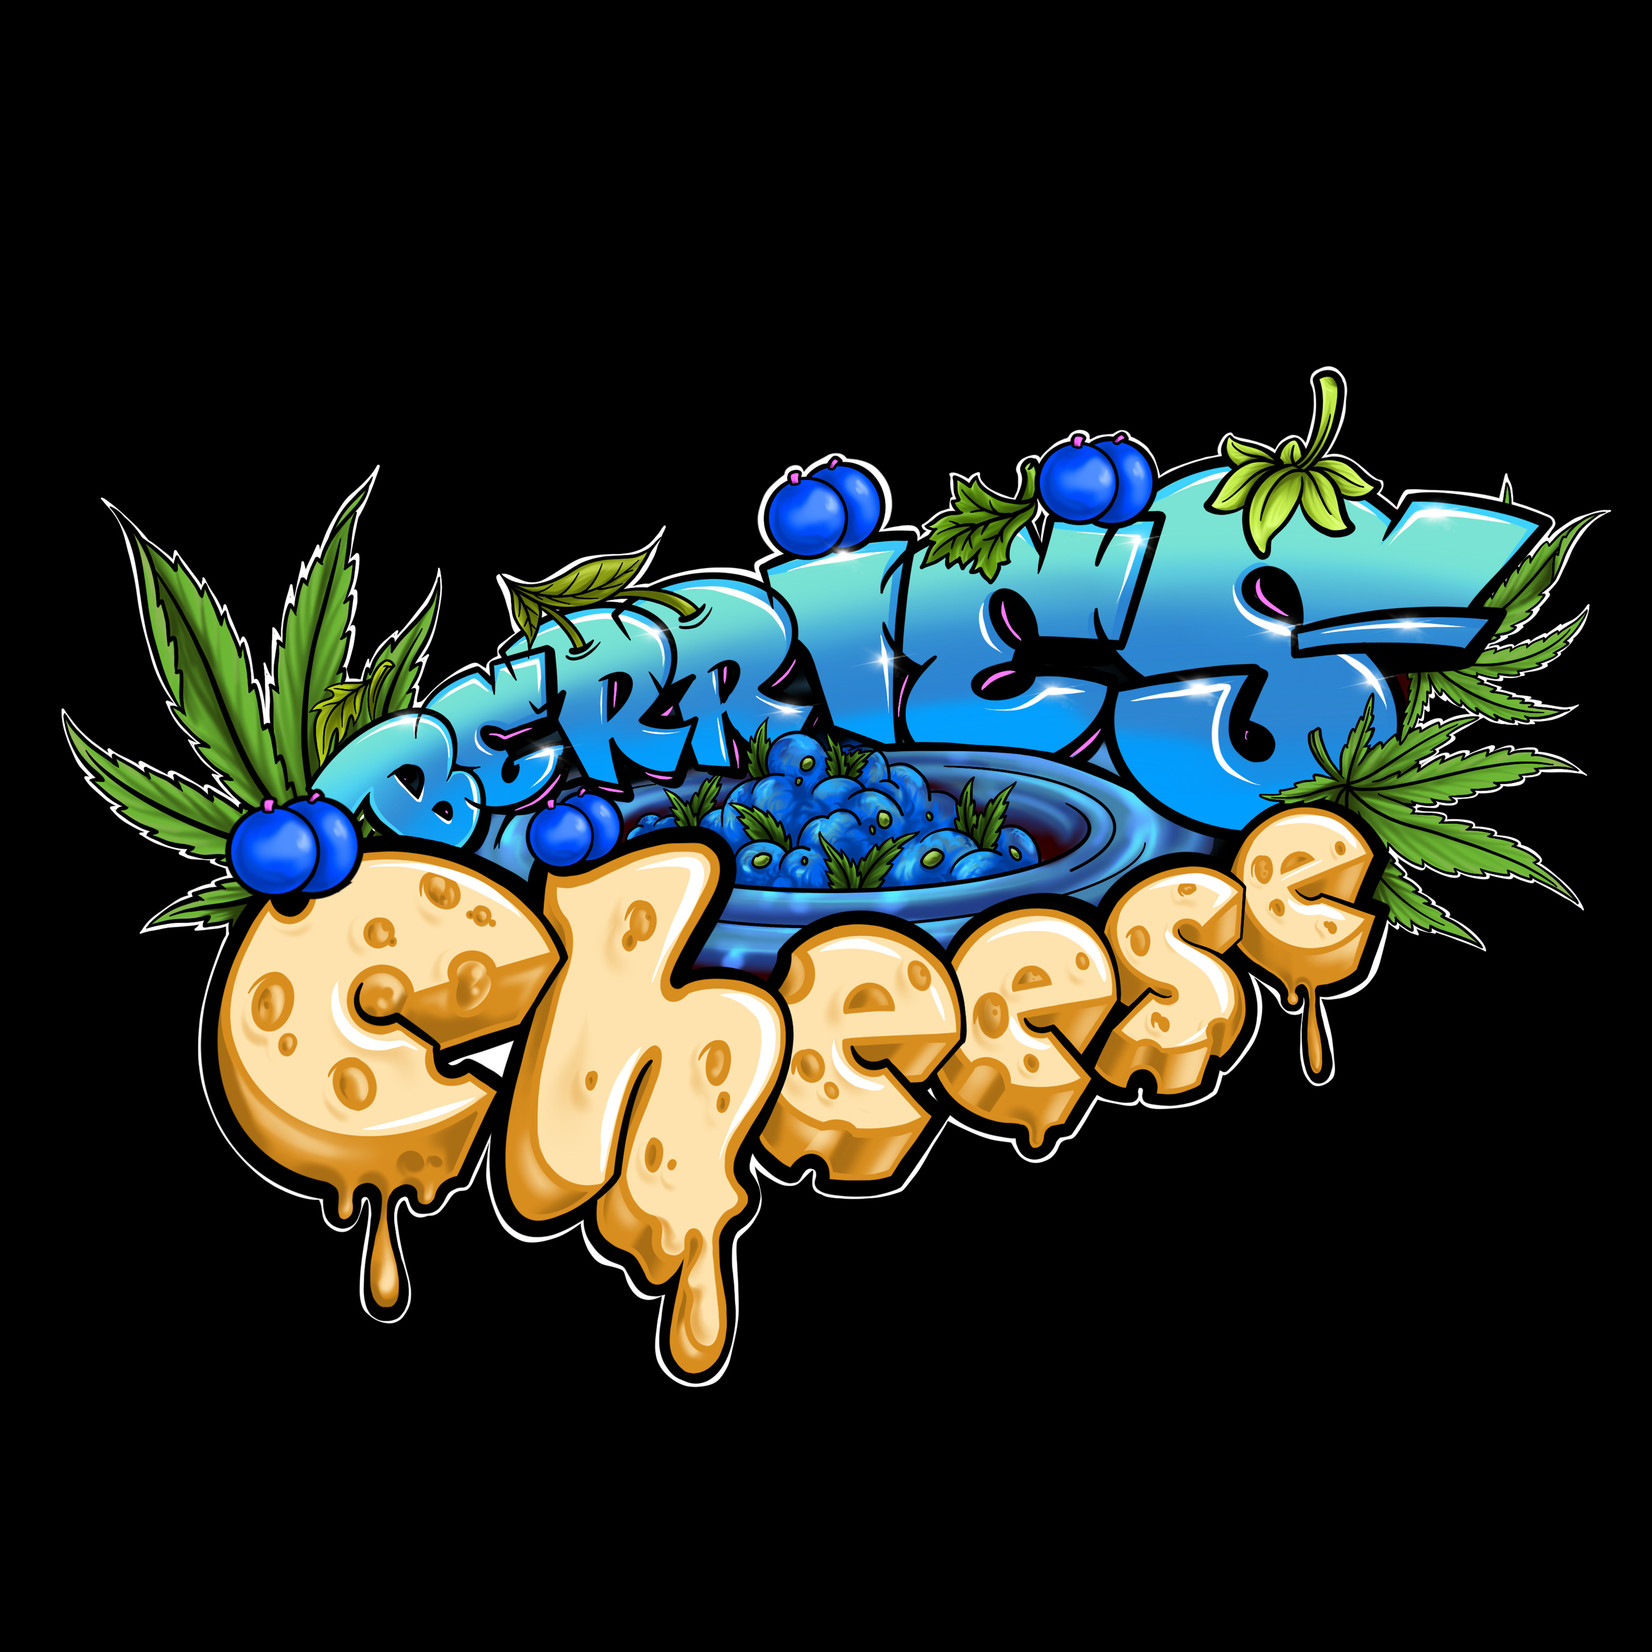 Berries & Cheese cannabis frø